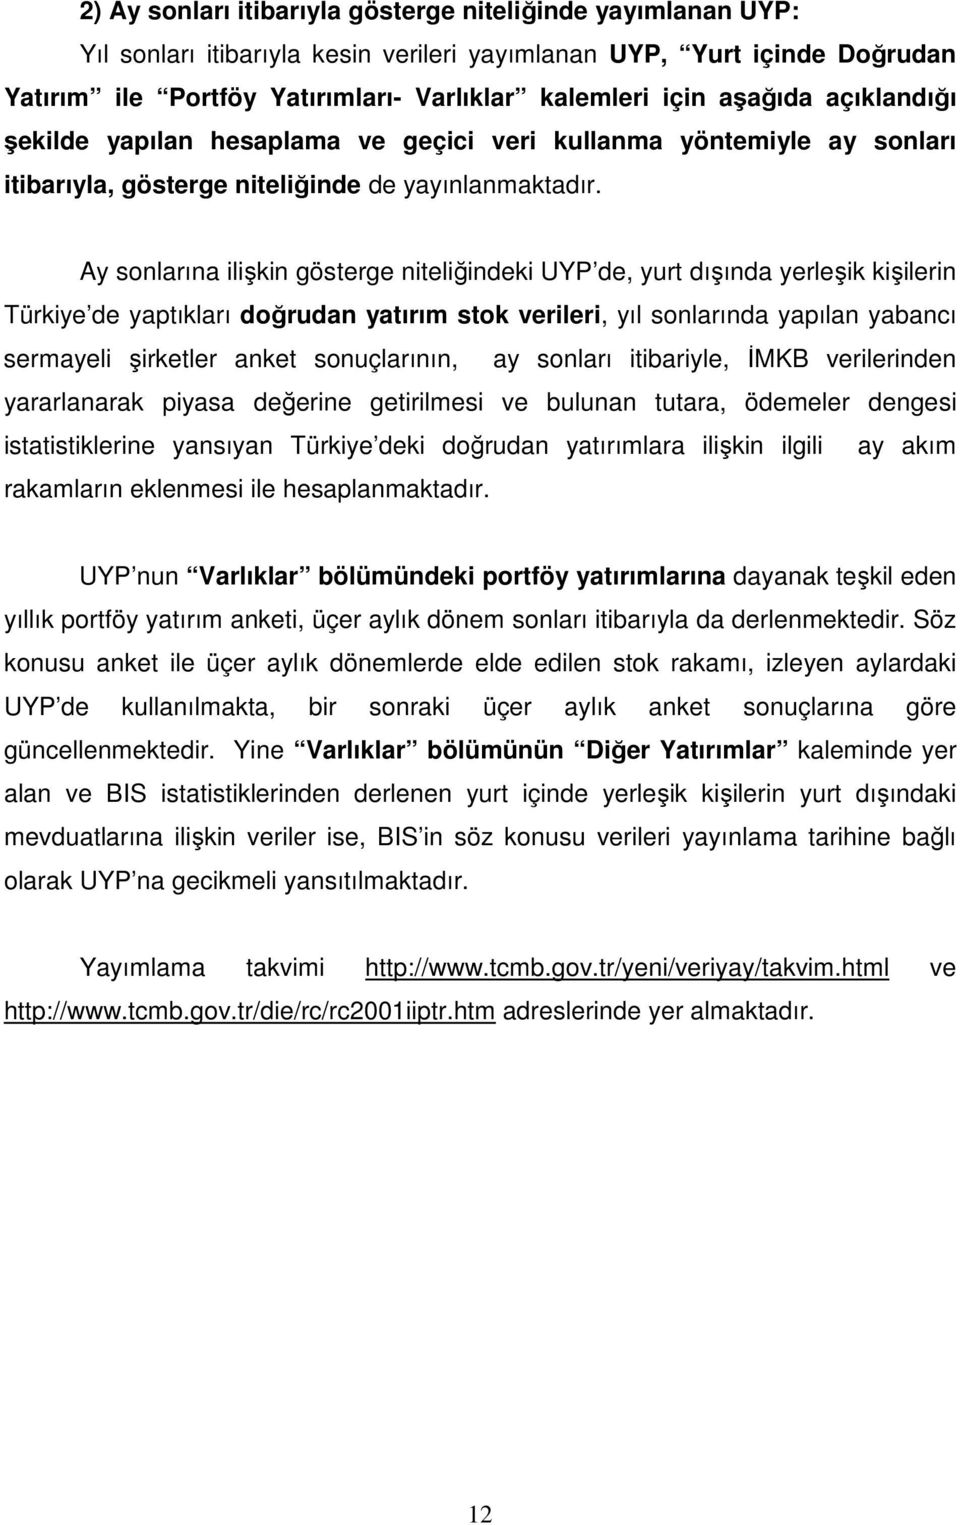 Ay sonlarına ilişkin gösterge niteliğindeki UYP de, yurt dışında yerleşik kişilerin Türkiye de yaptıkları doğrudan yatırım stok verileri, yıl sonlarında yapılan yabancı sermayeli şirketler anket